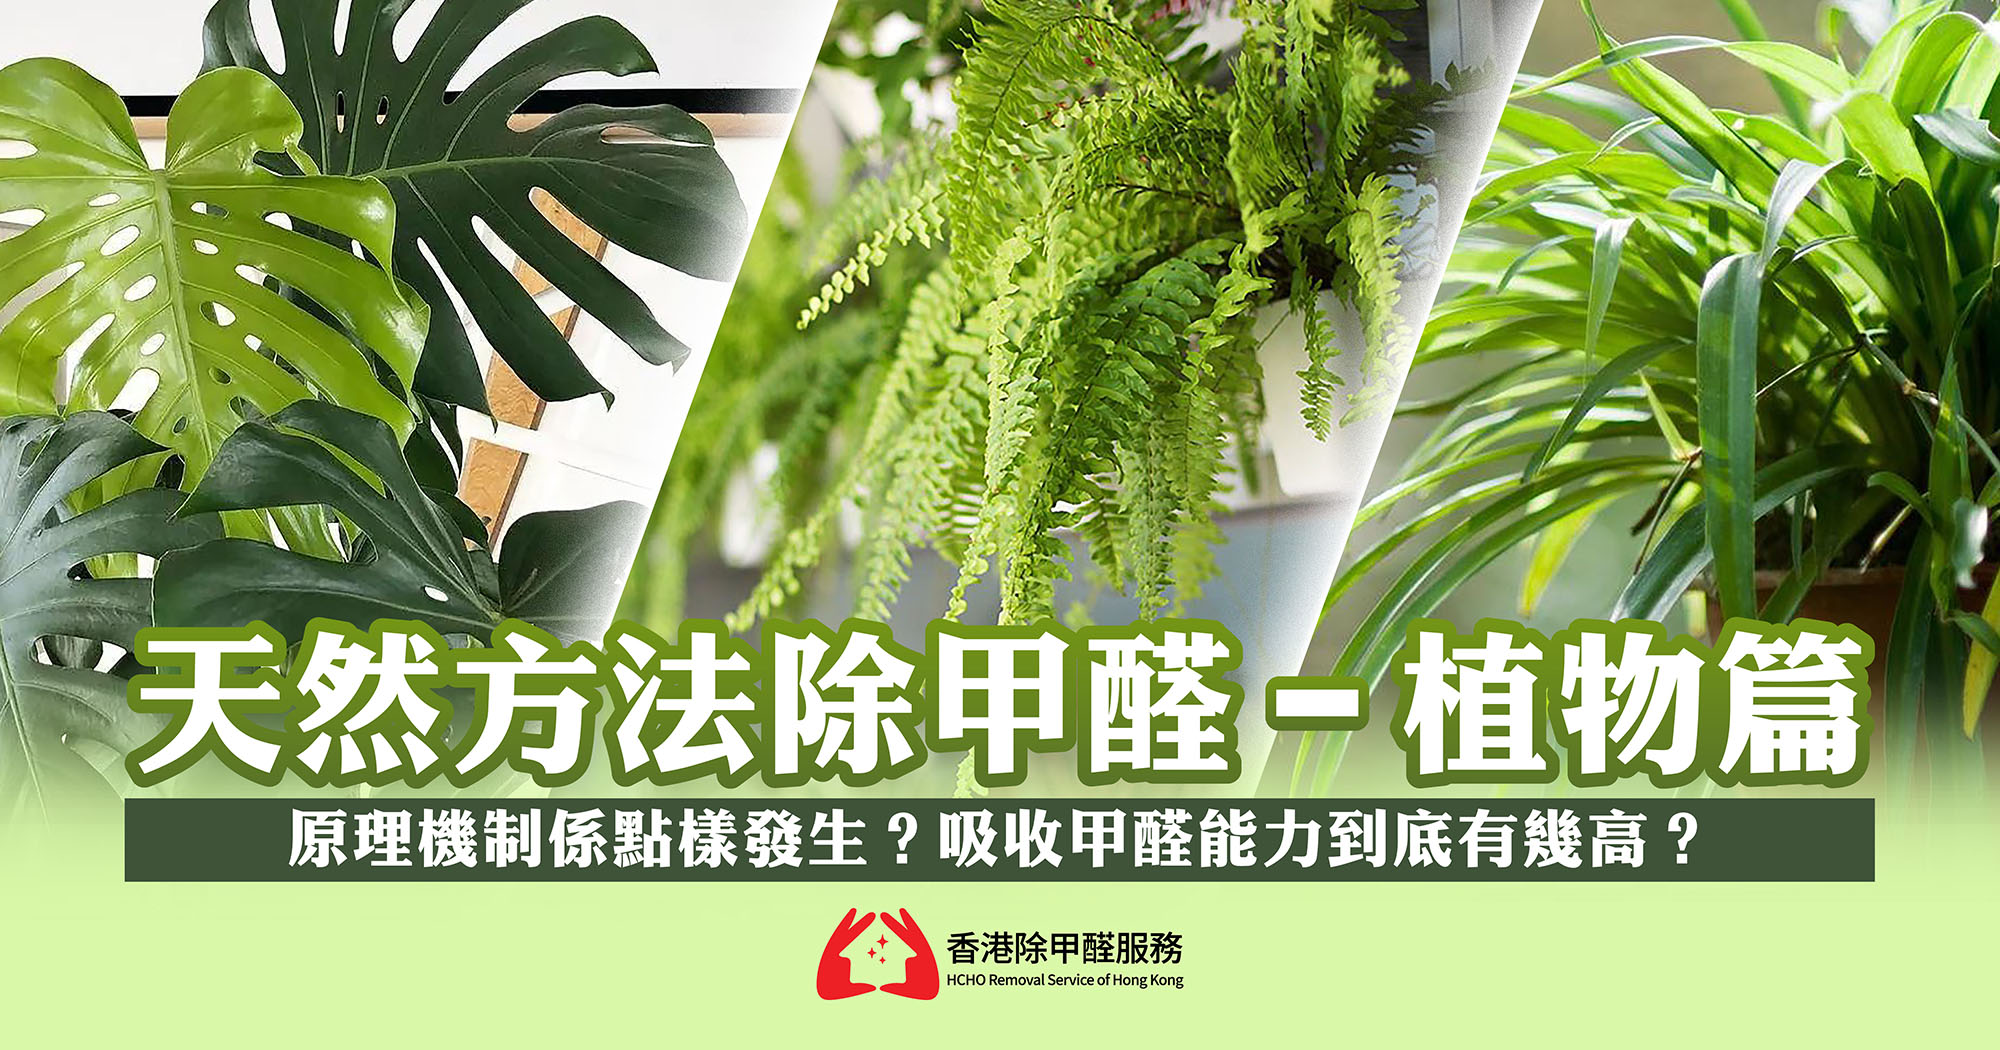 天然方法除甲醛-植物篇 - 香港除甲醛服務